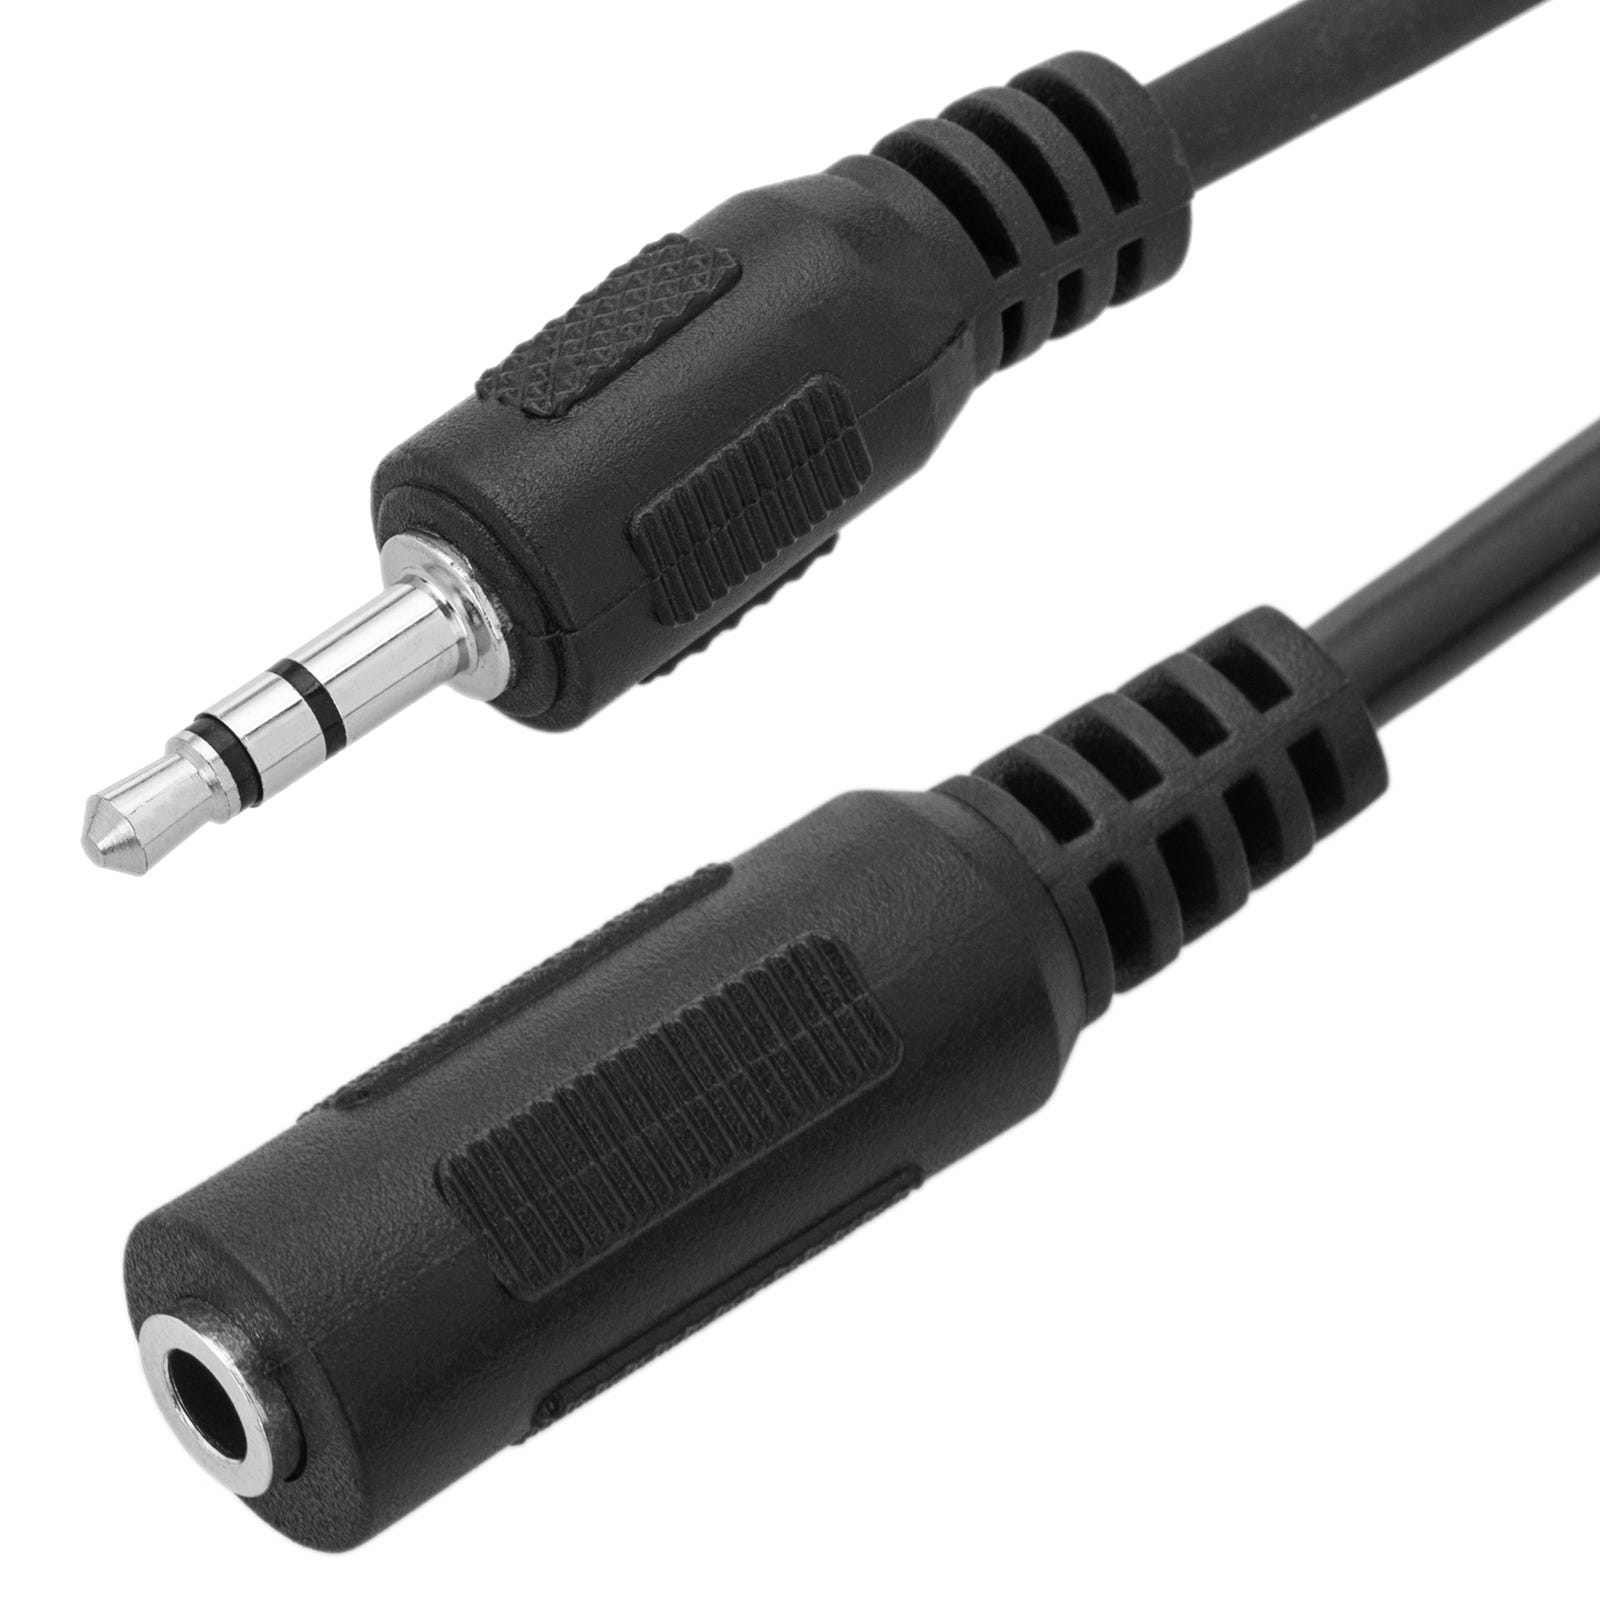 Câble Audio Minijack Stéréo 3,5 mm mâle femelle 3m